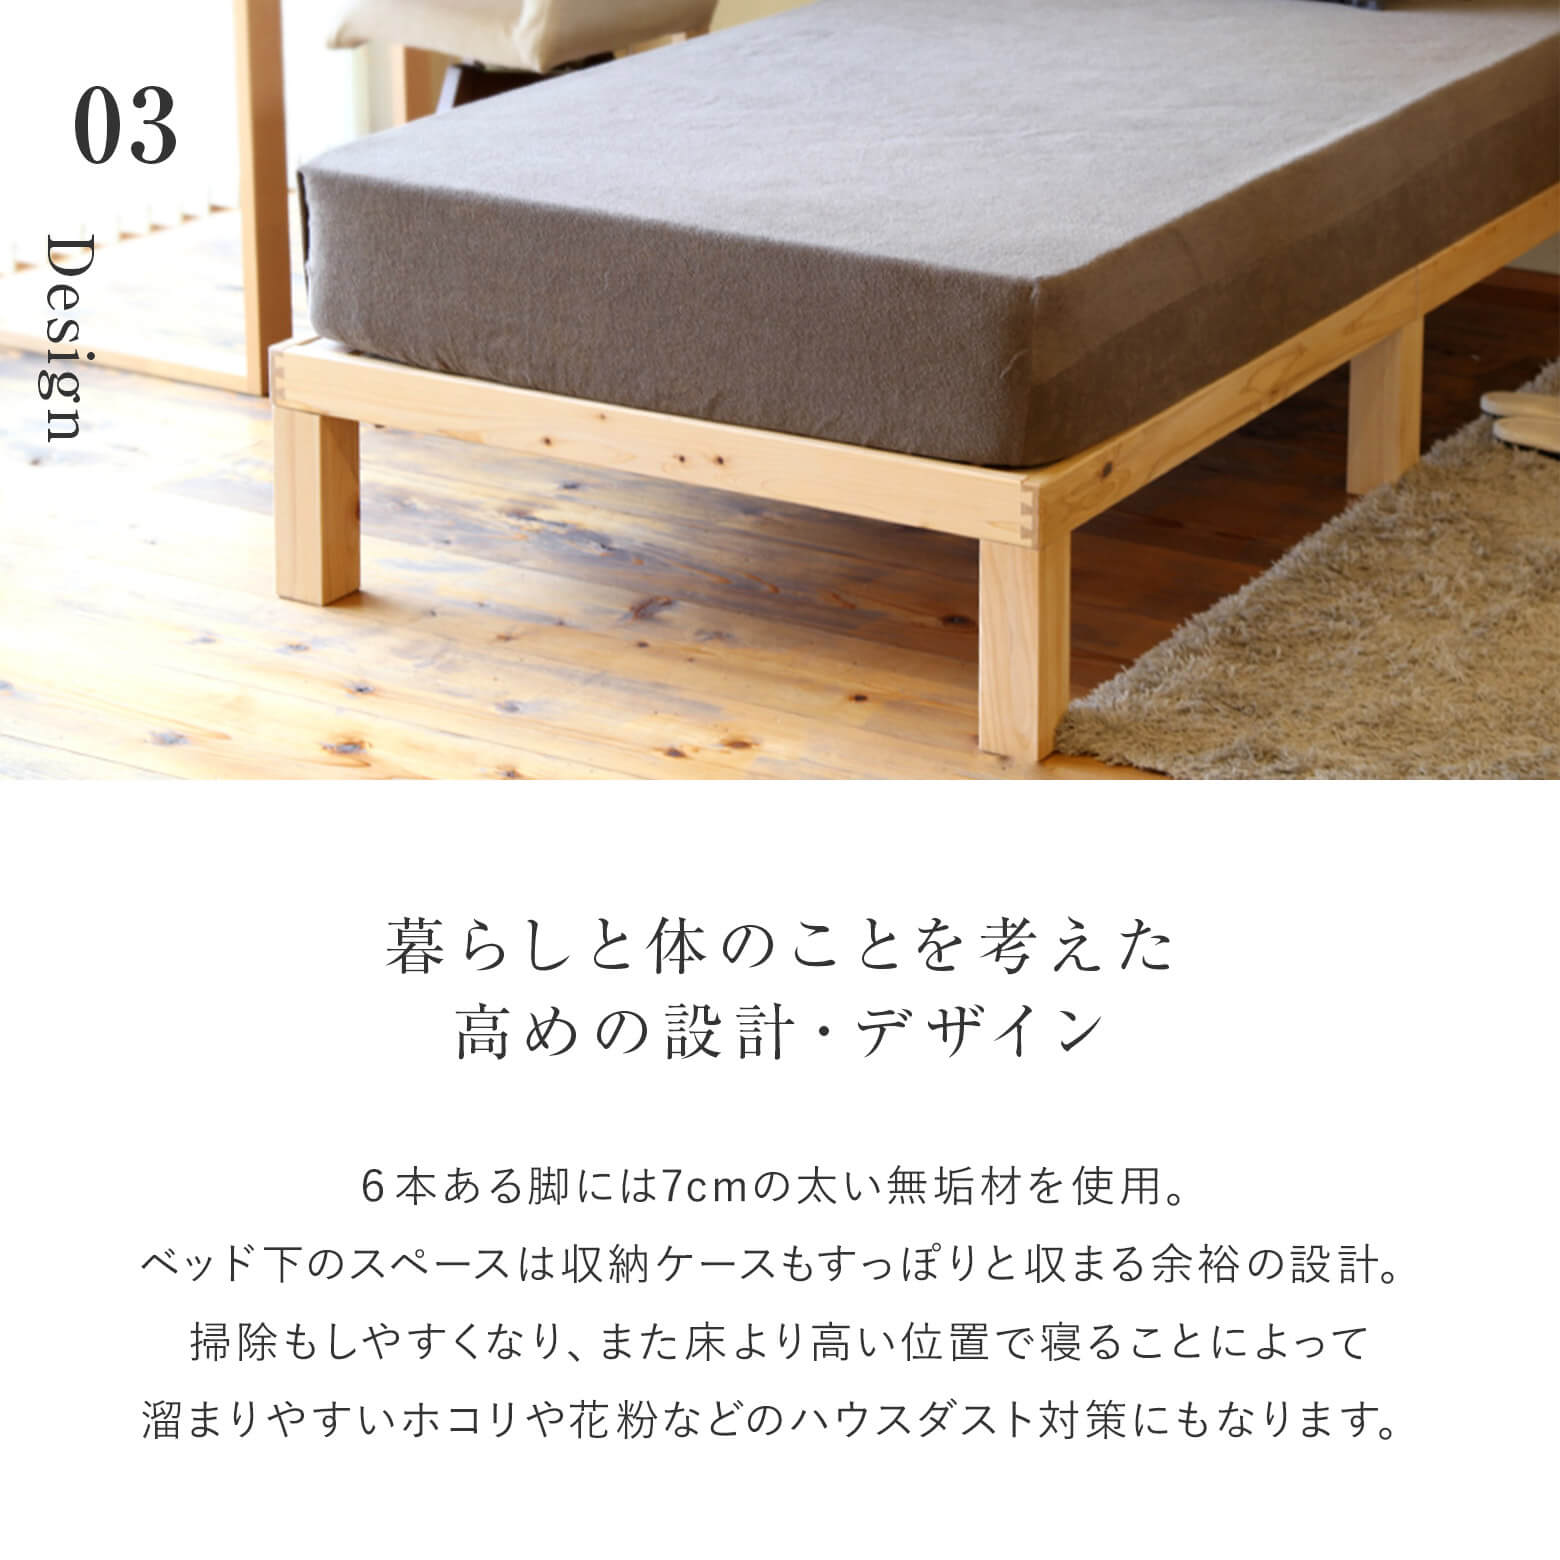 ダブルサイズ】ひのきのすのこベッド【マットレス別売り】【組立設置付】 | 日本最大級のベッド専門店 ビーナスベッド